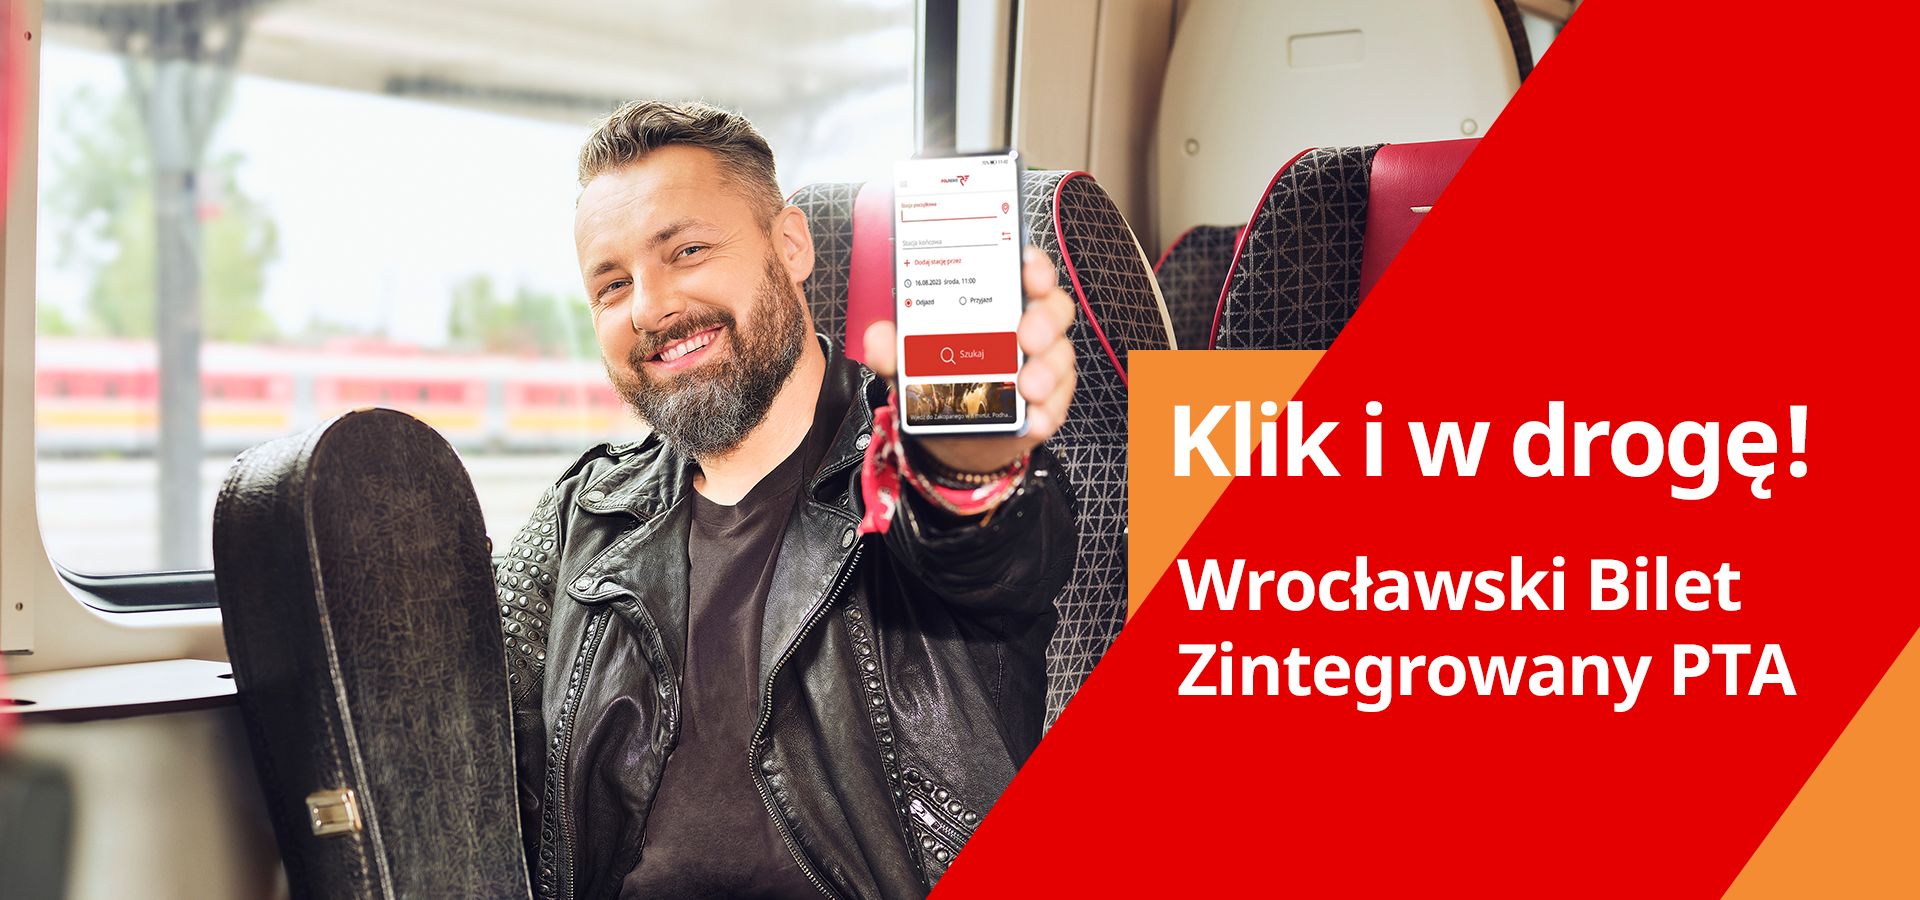 Wrocławski Bilet Zintegrowany PTA